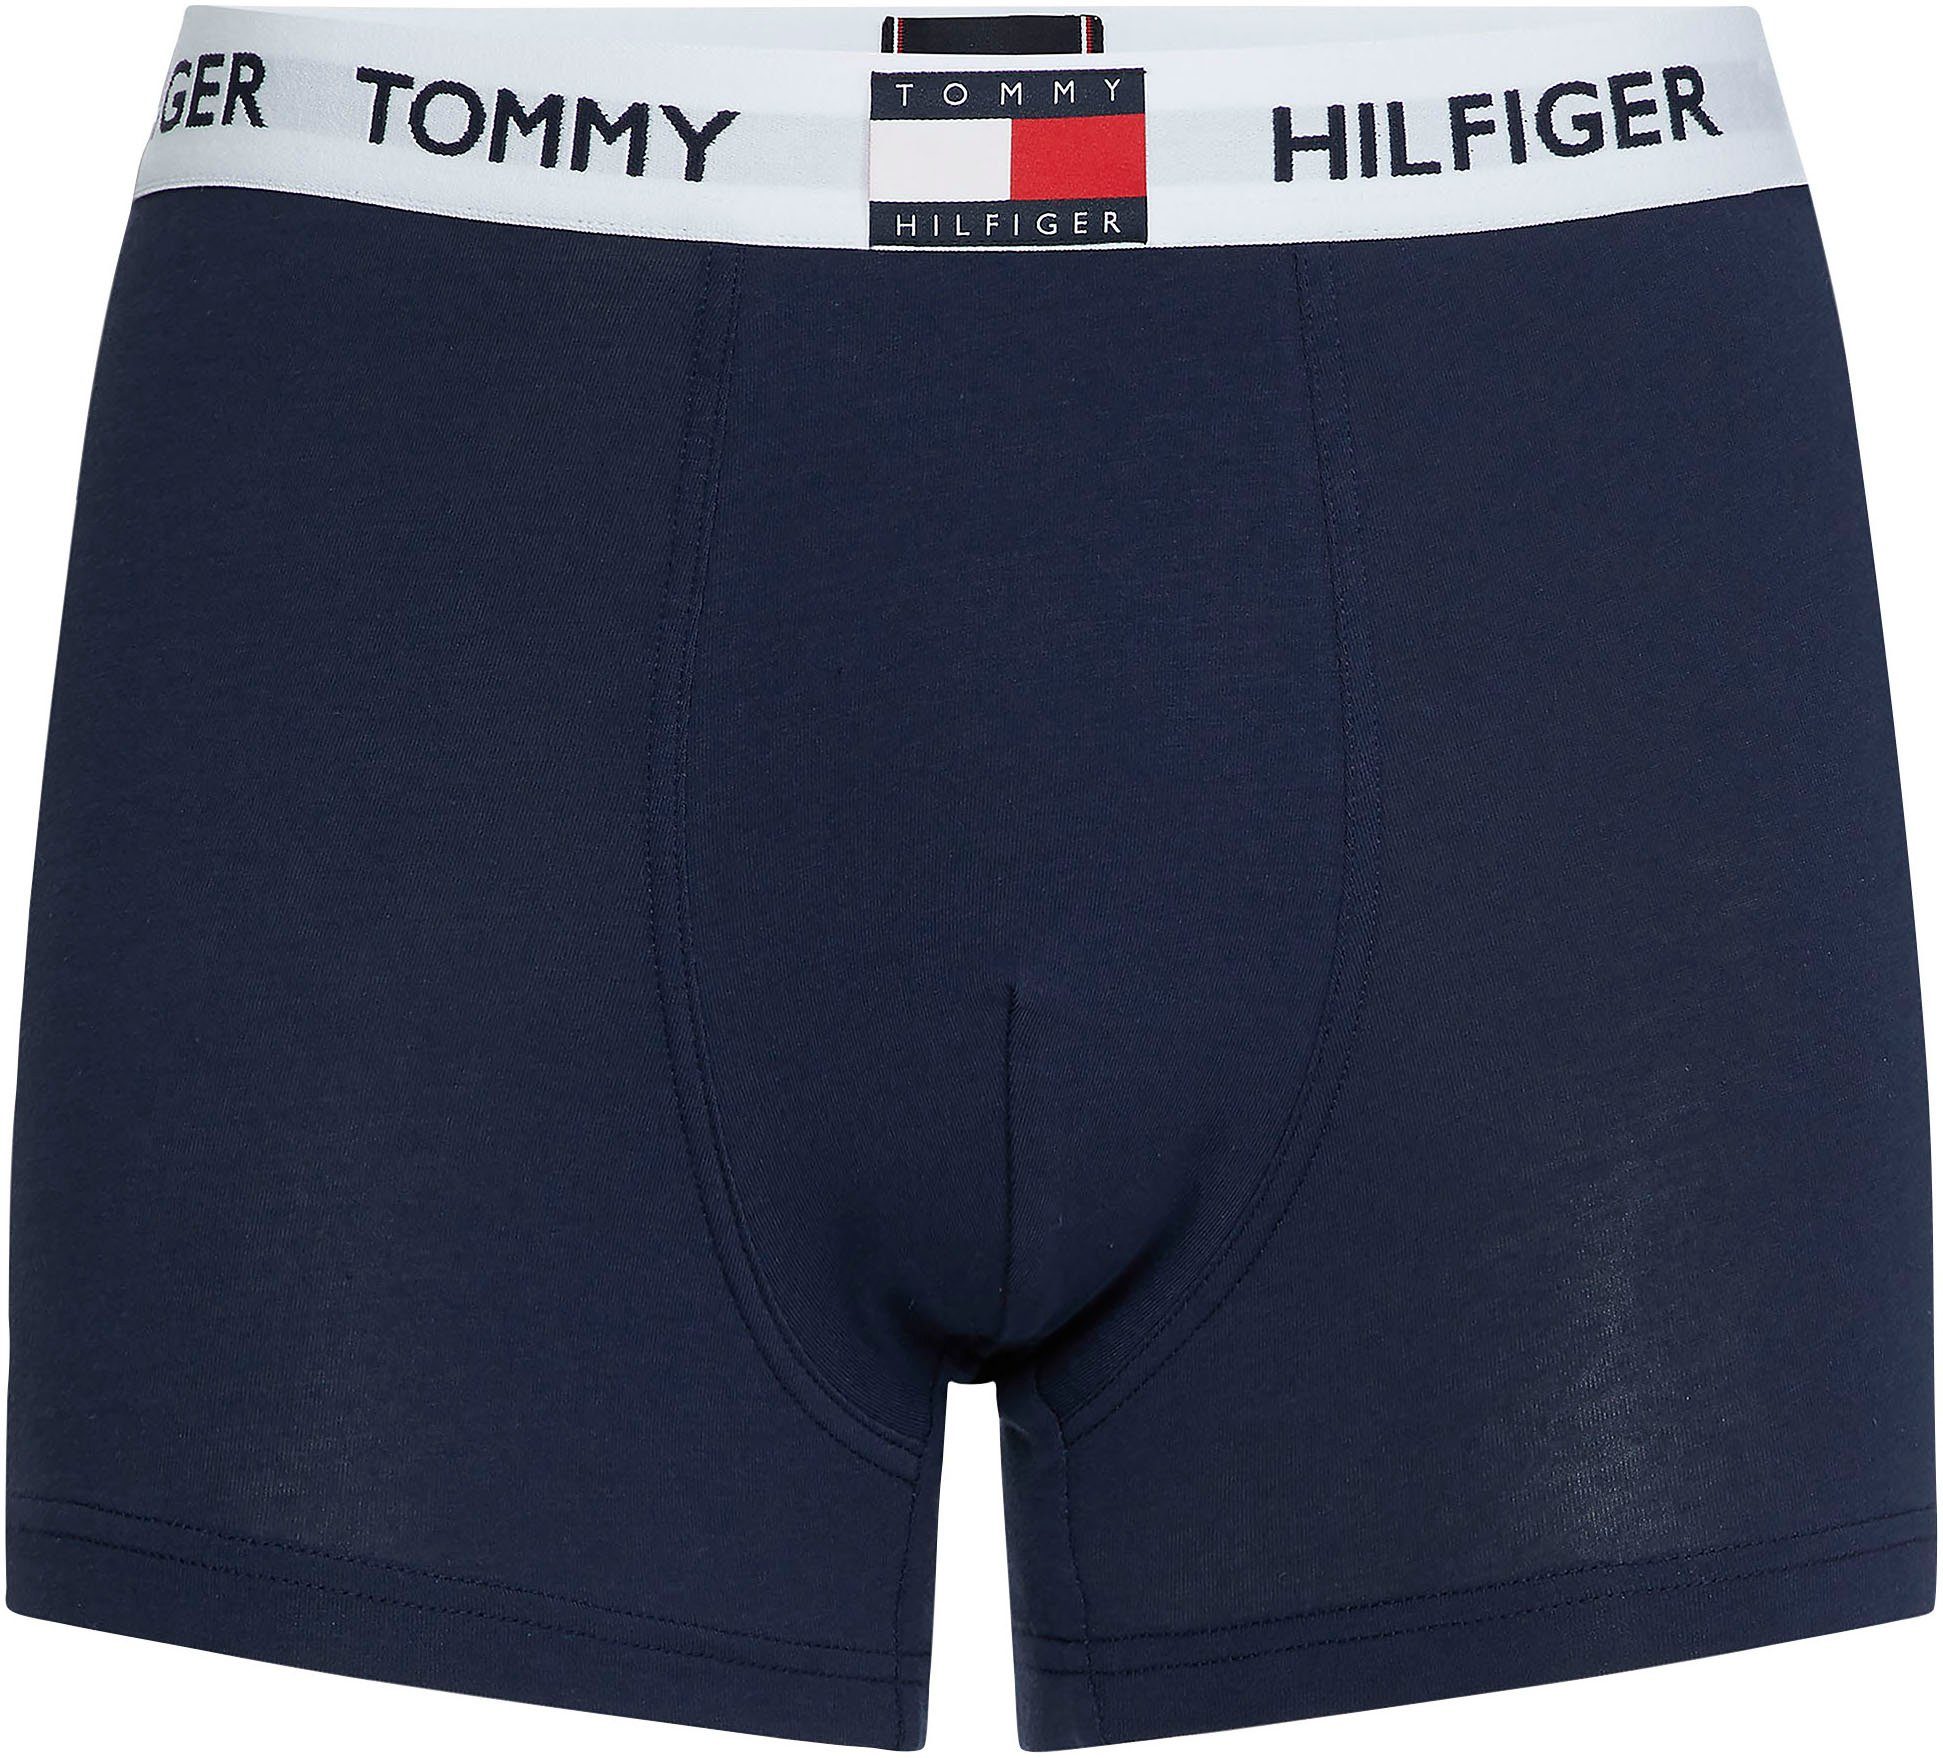 Tommy Hilfiger Underwear Trunk TRUNK mit Tommy Hilfiger Logo-Elastiktape NAVY BLAZER